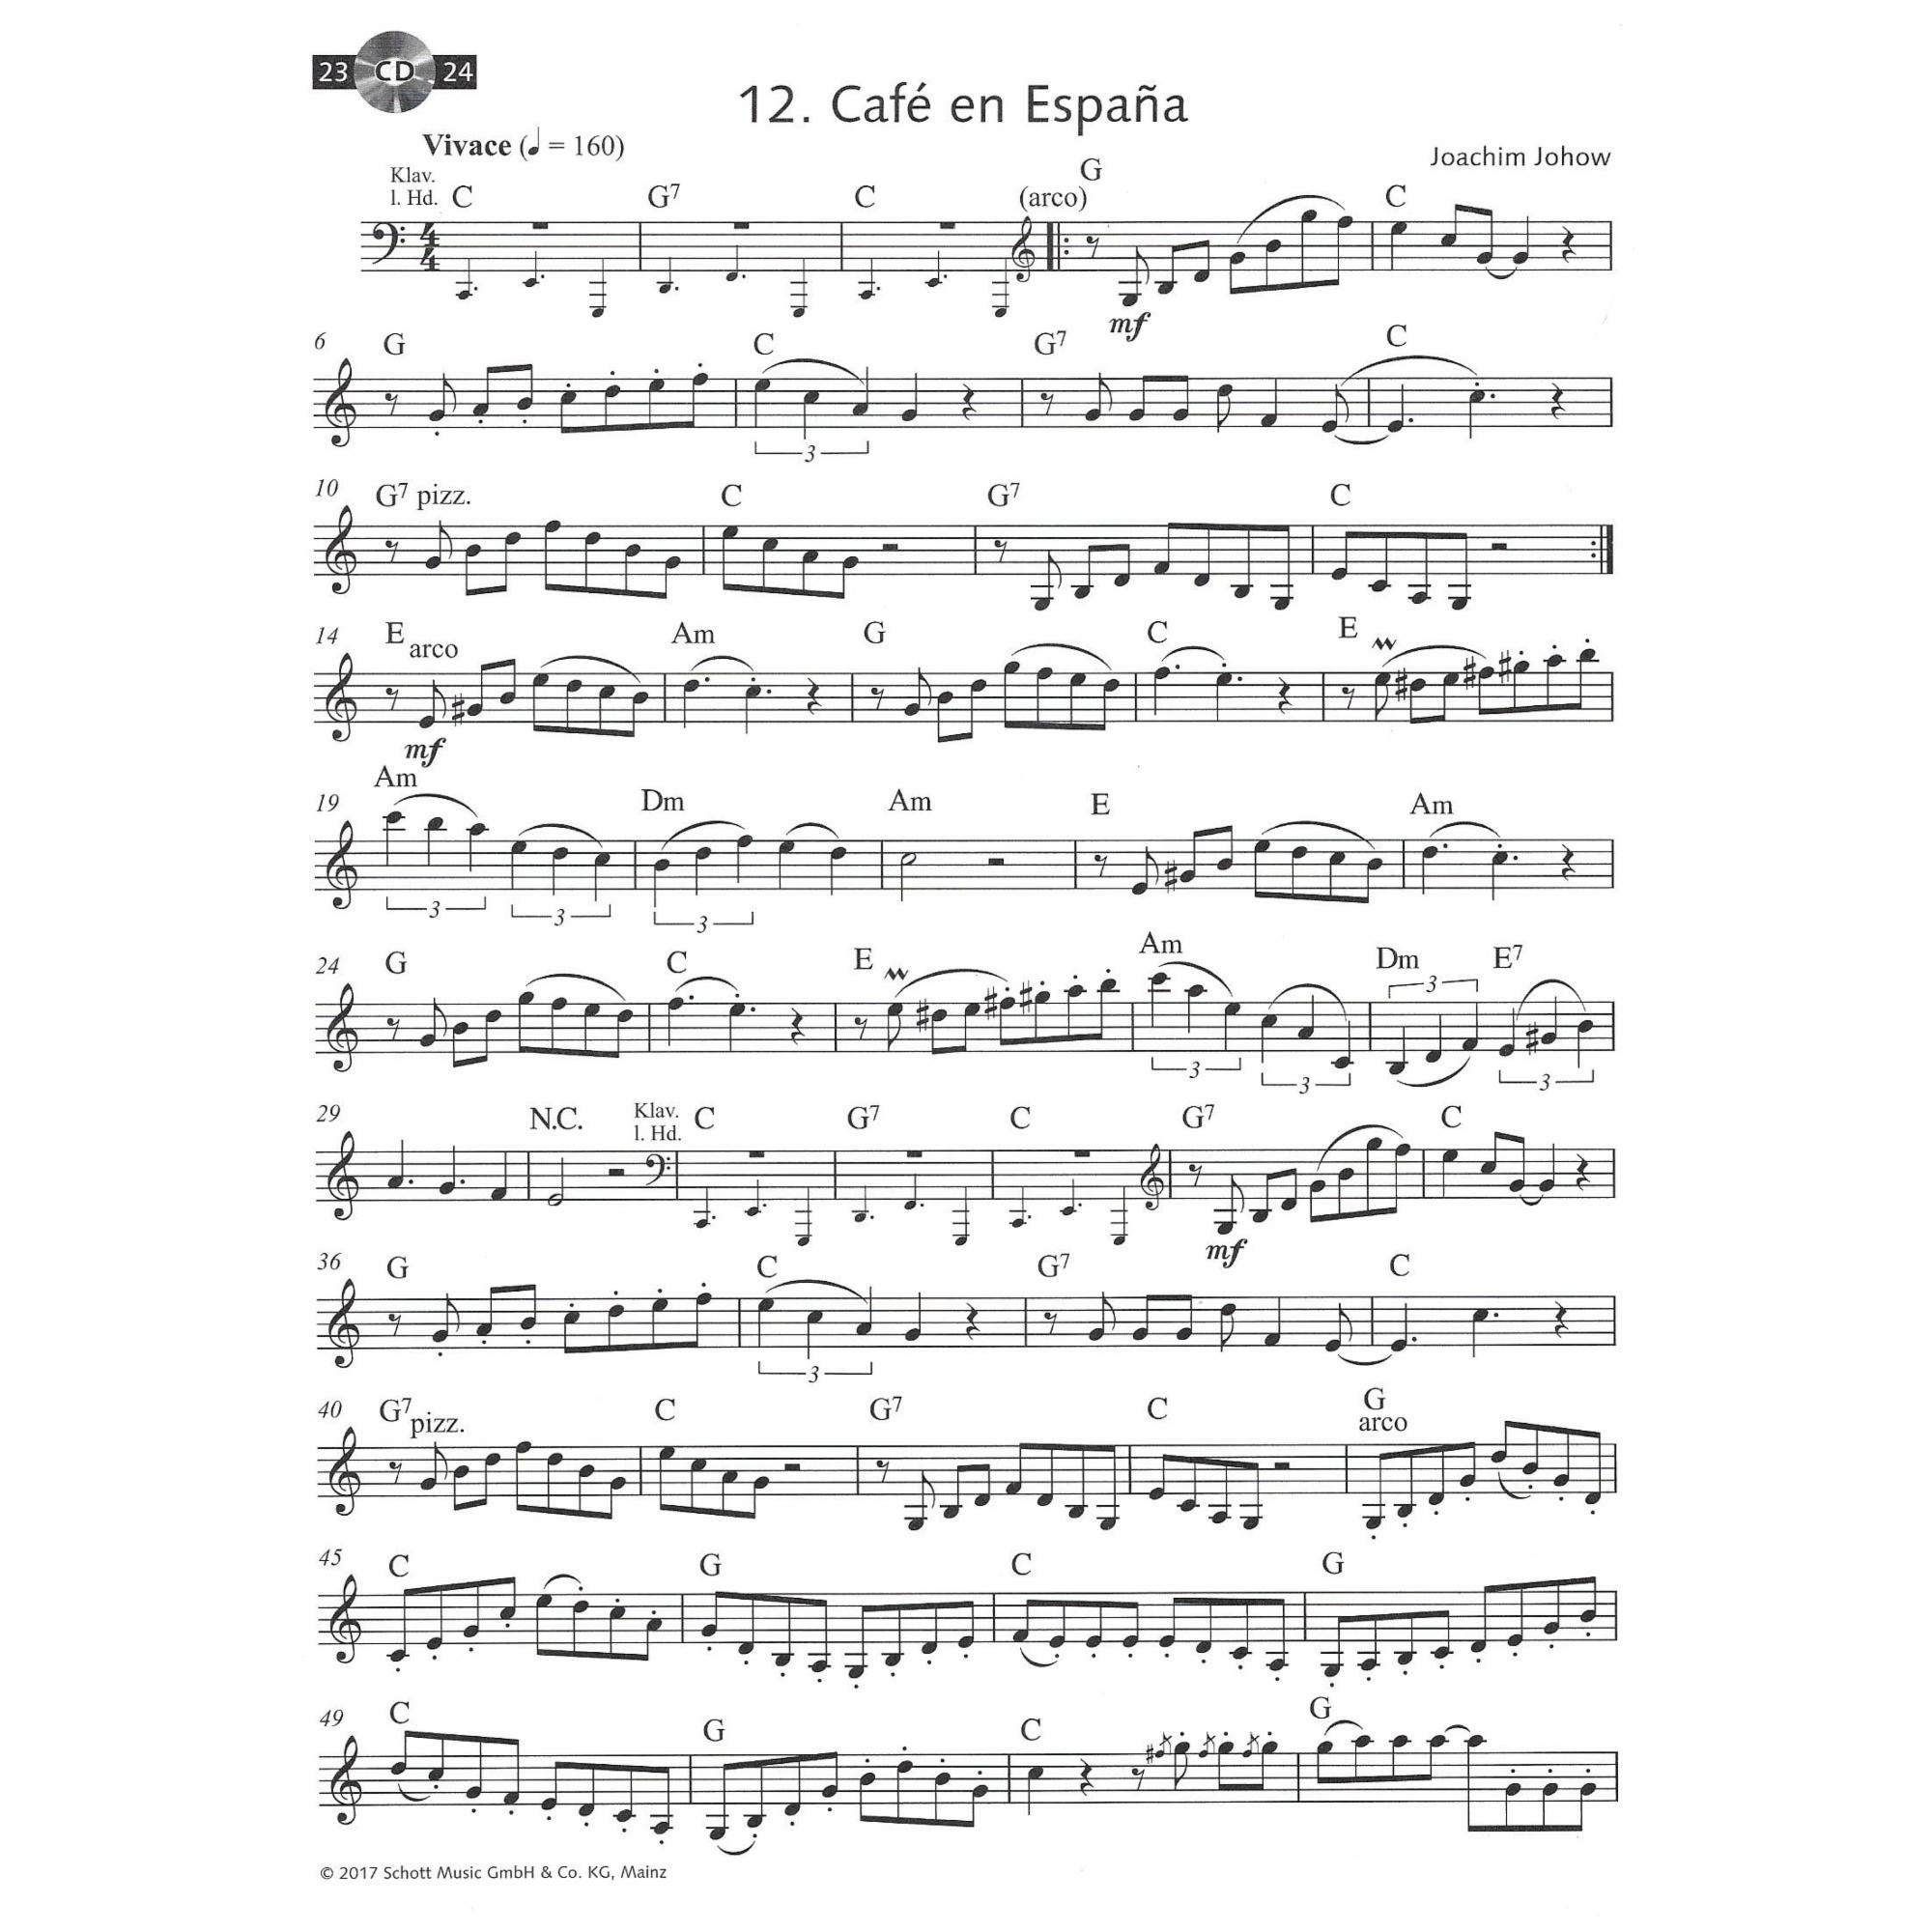 Sample: Violin (Pg. 18)